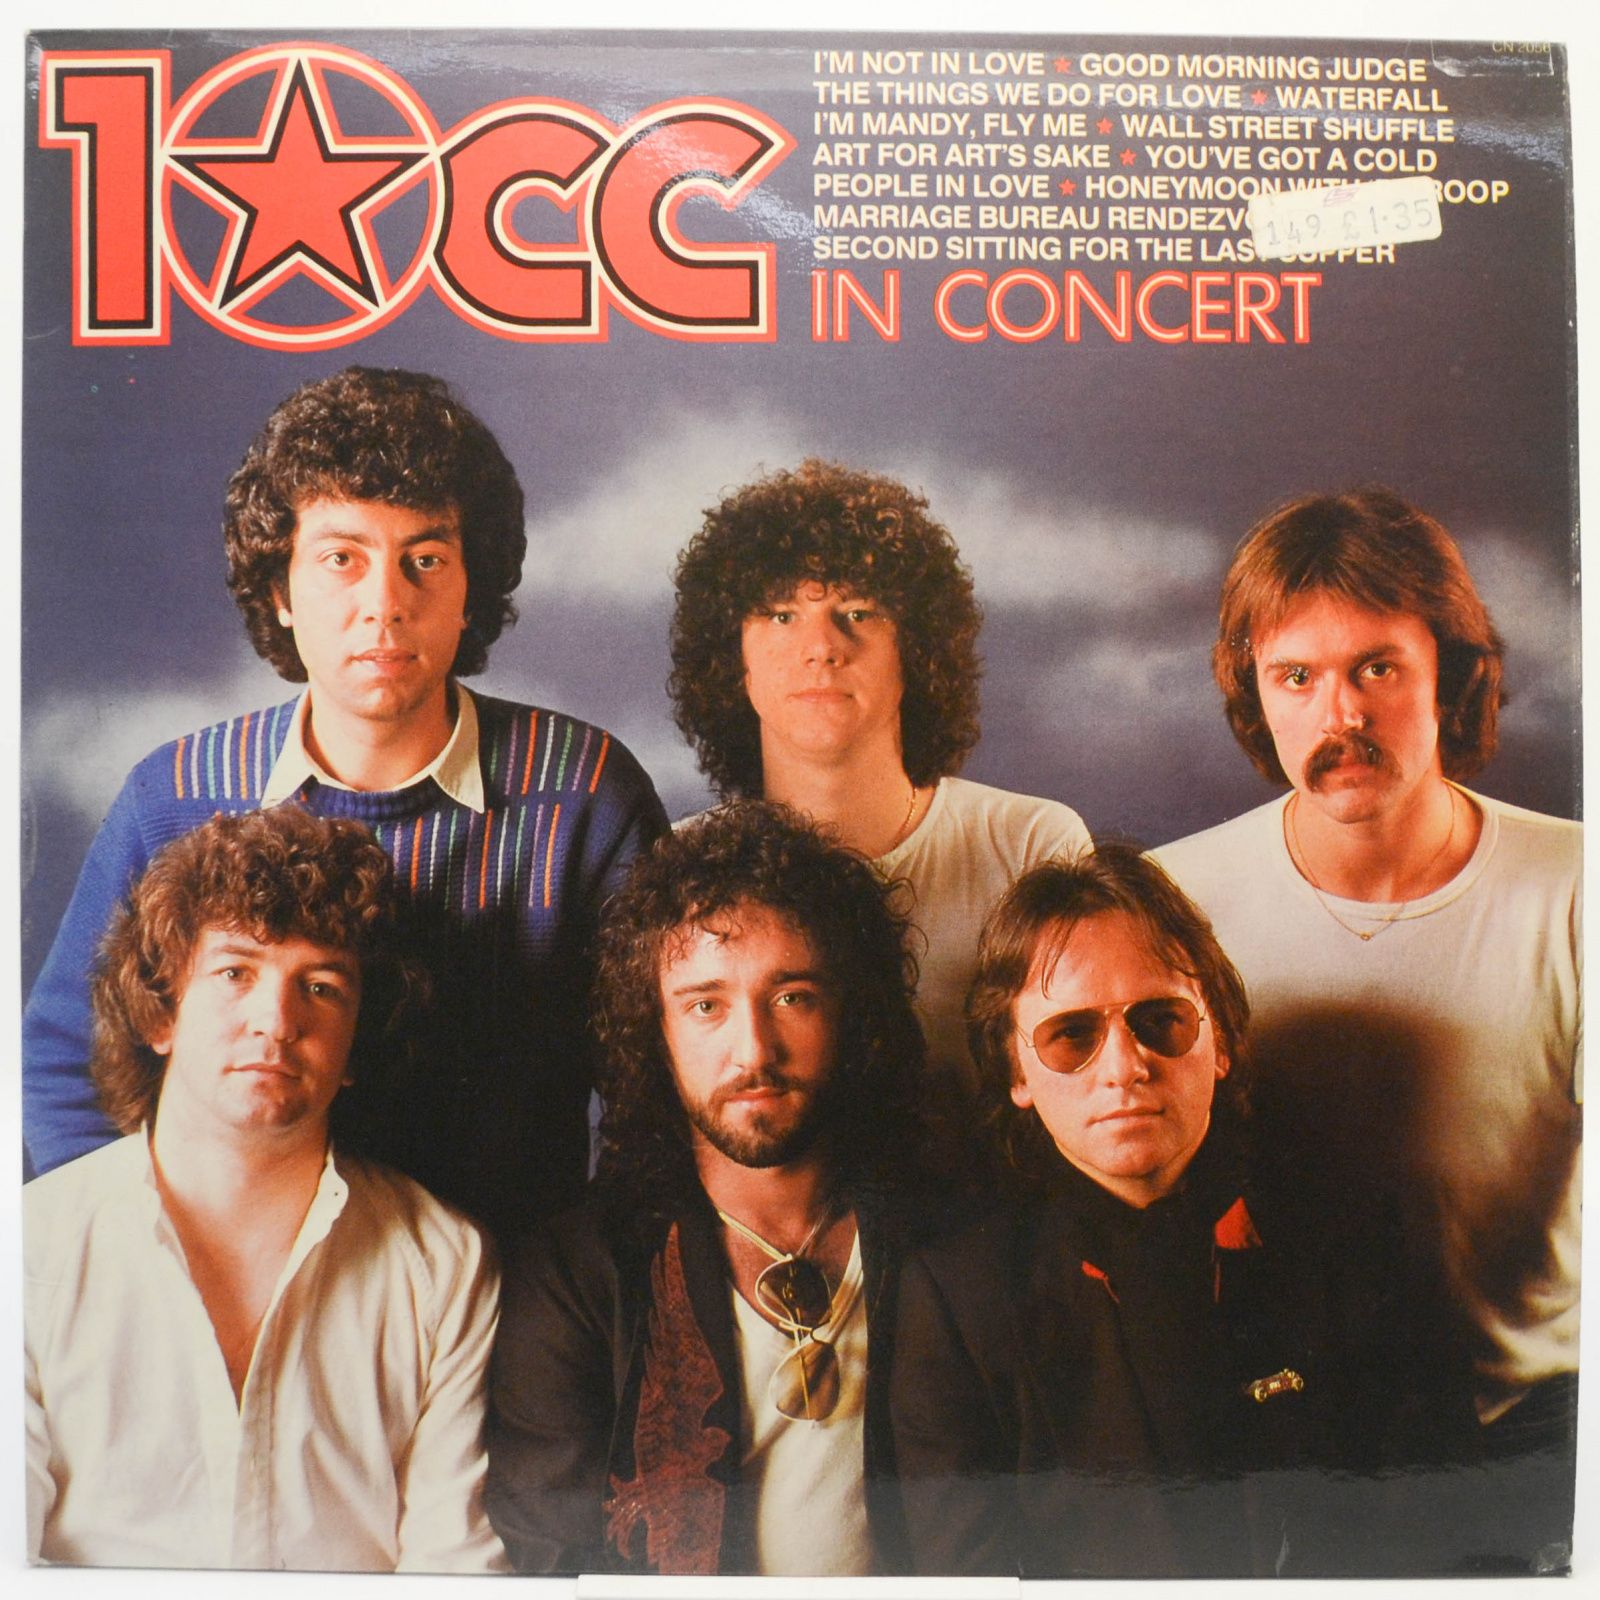 10cc In Concert (UK), 1982